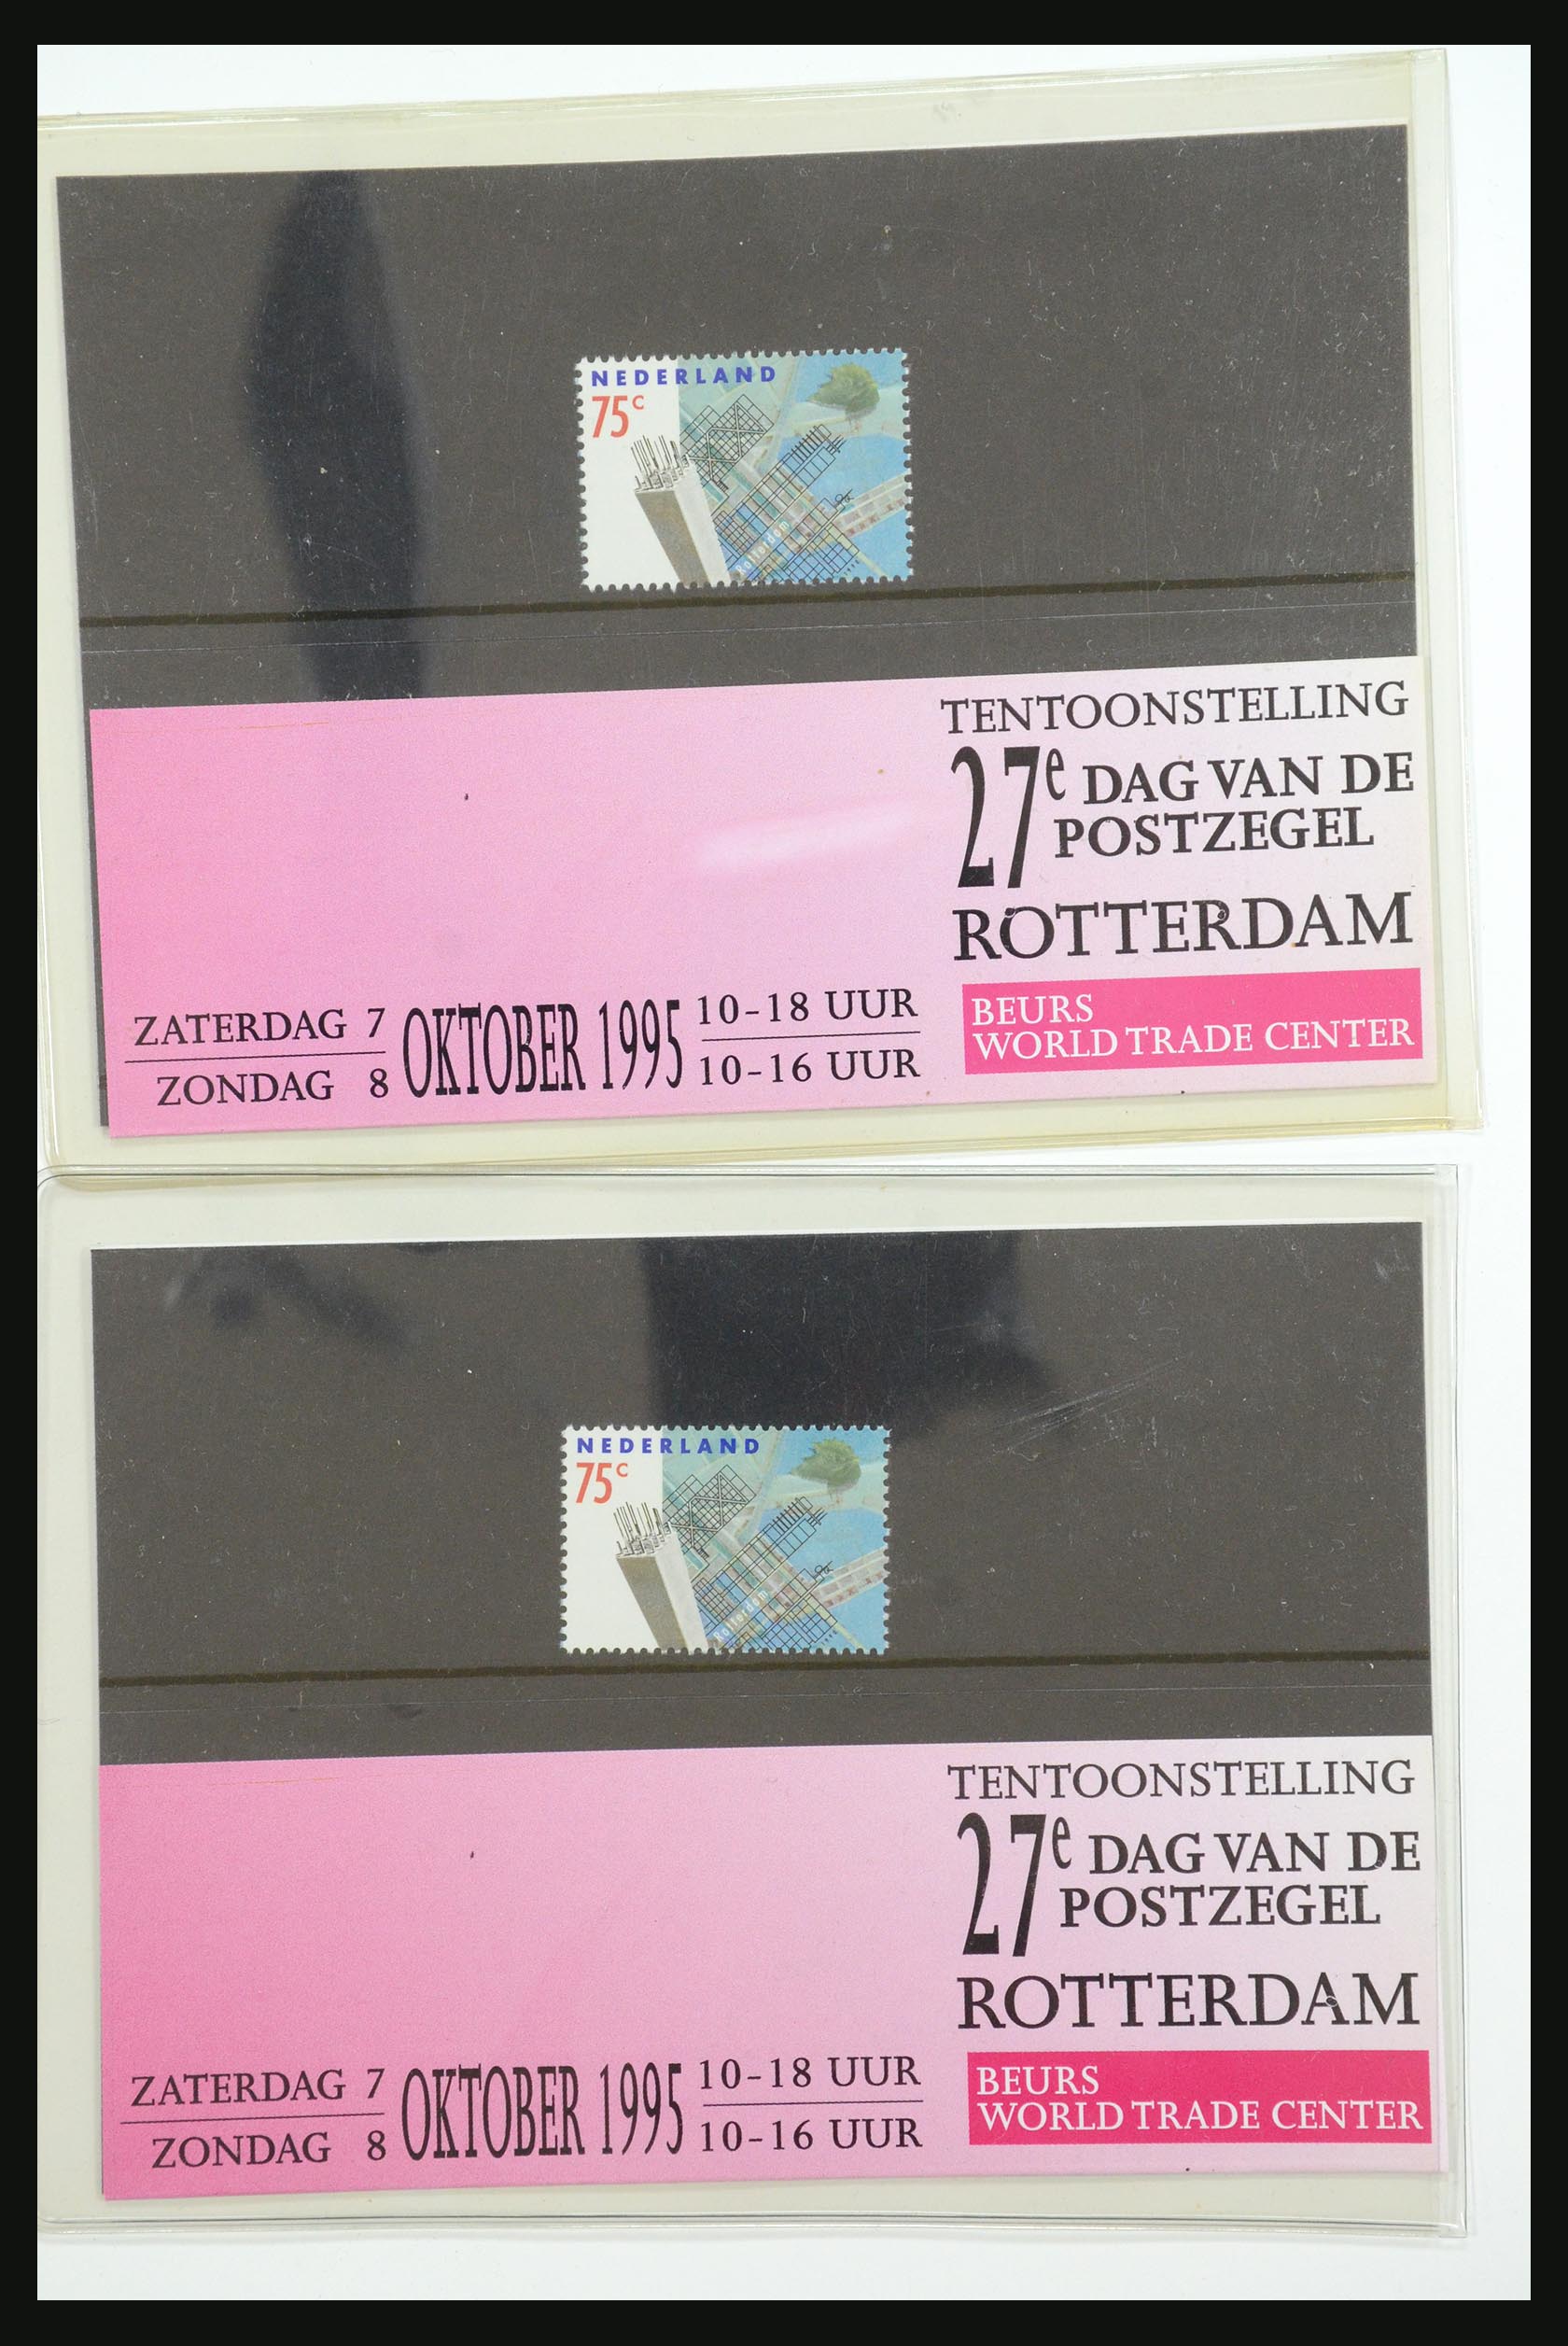 31495 066 - 31495 Netherlands special presentation packs.